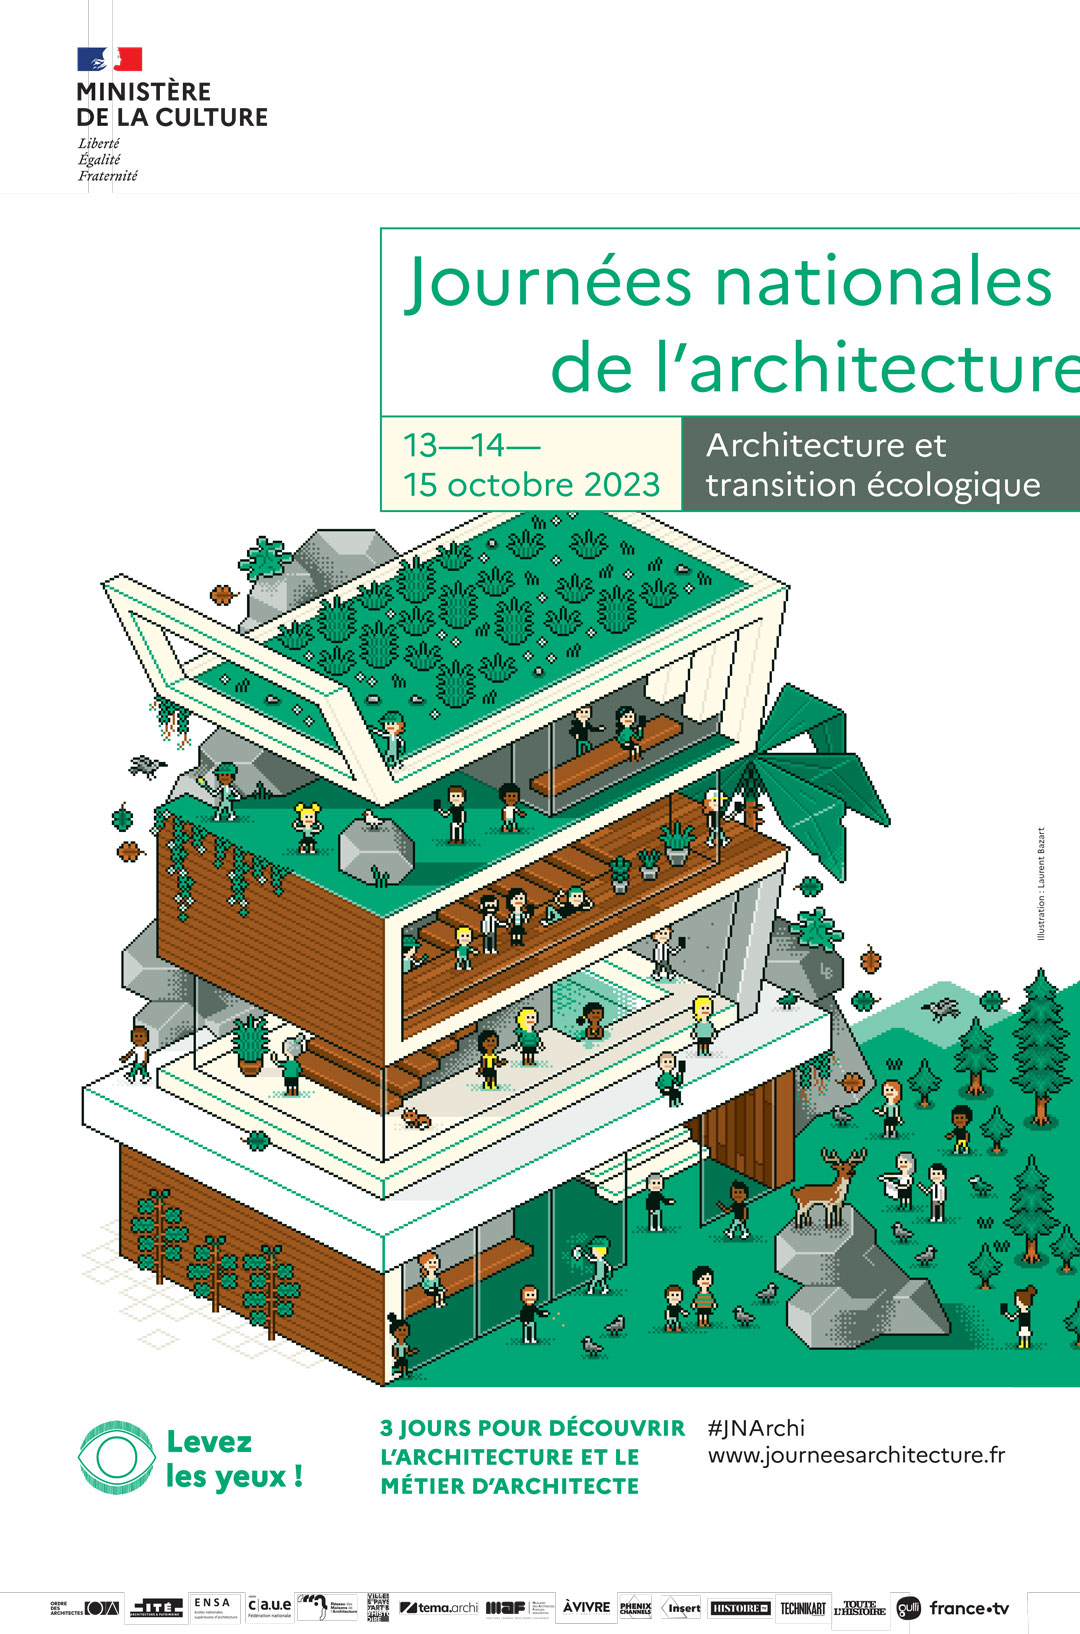 Journées nationales de l’architecture - 13—14— 15 octobre 2023 - Architecture et transition écologique